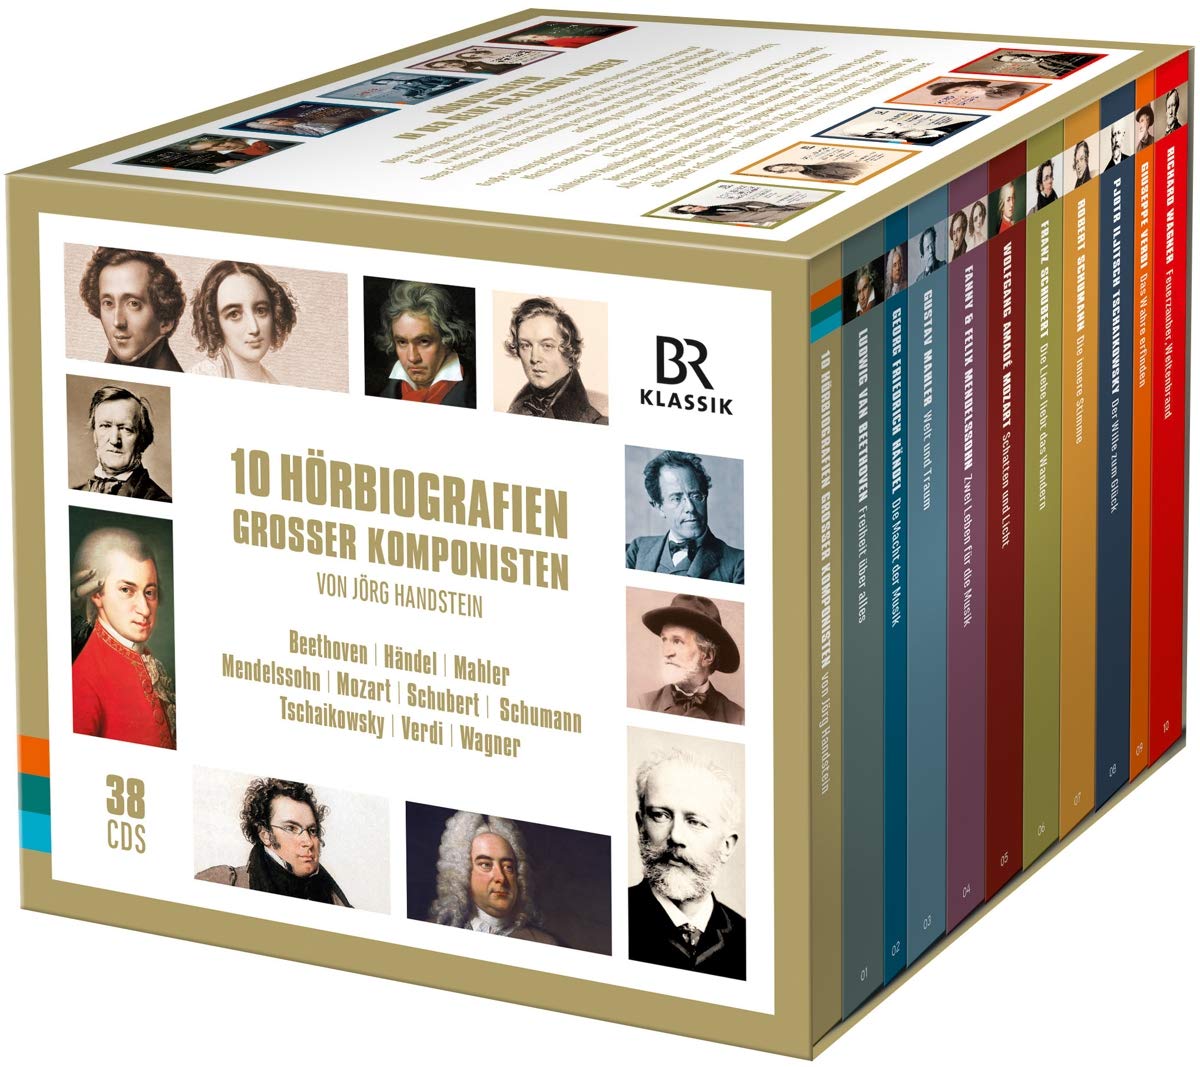 Audio Cd 10 Horbiografien Grosser Komponisten (38 Cd) NUOVO SIGILLATO, EDIZIONE DEL 20/11/2020 SUBITO DISPONIBILE